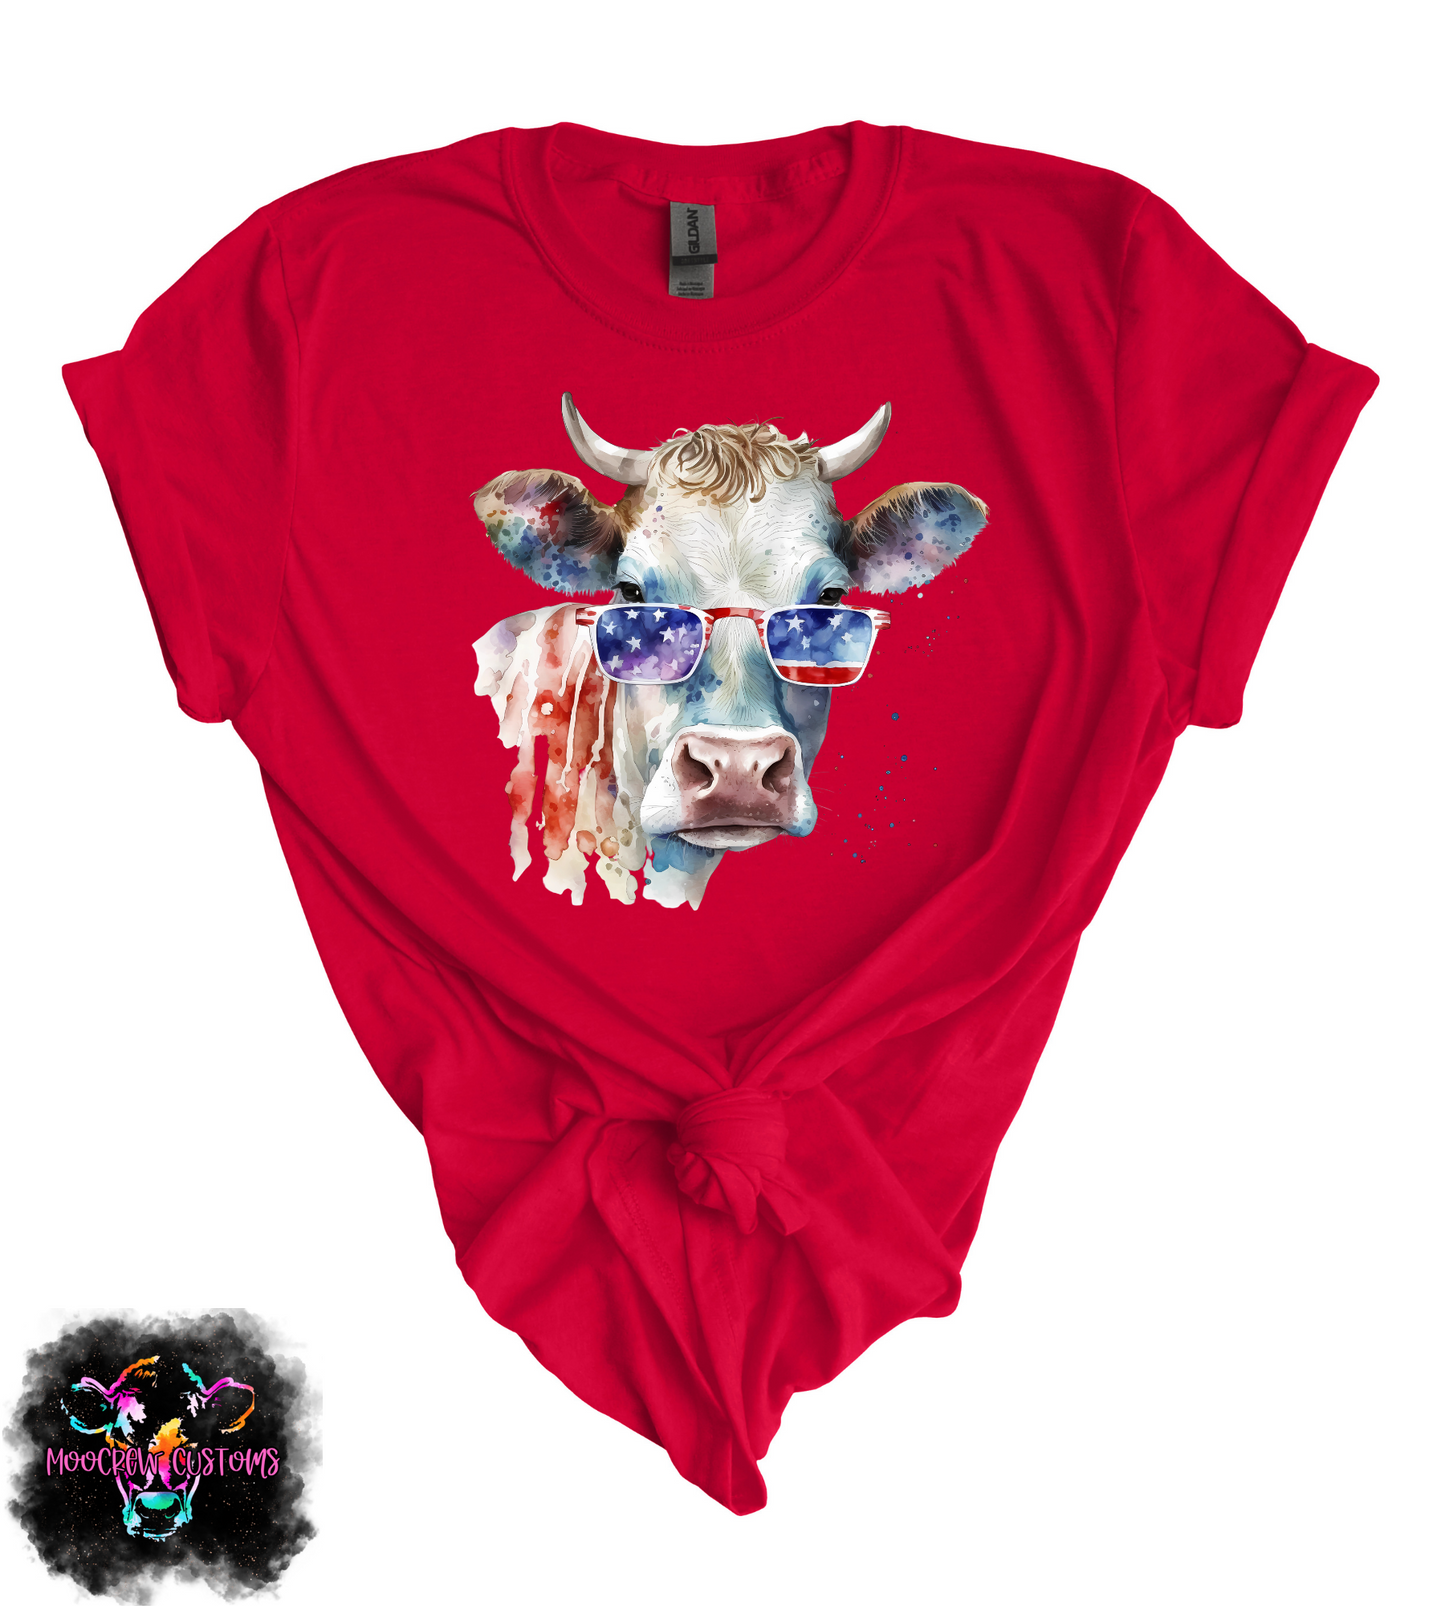 Watercolor Americana Cow Tshirt